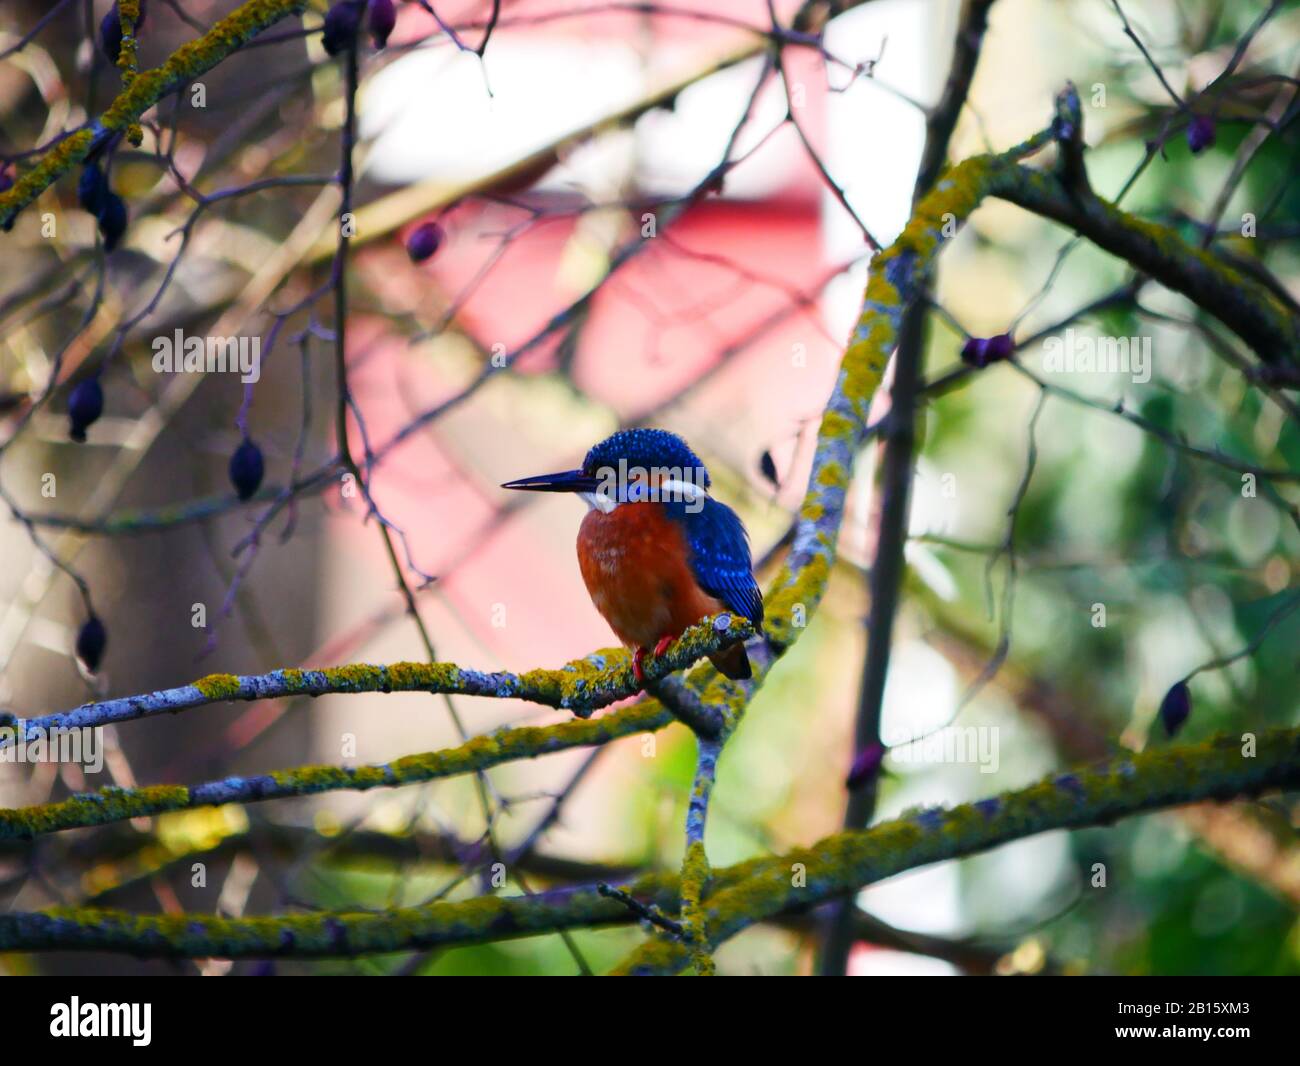 Ulm, Germany: A kingfisher bird in the Fishermen's quartier (Fischerviertel) Stock Photo